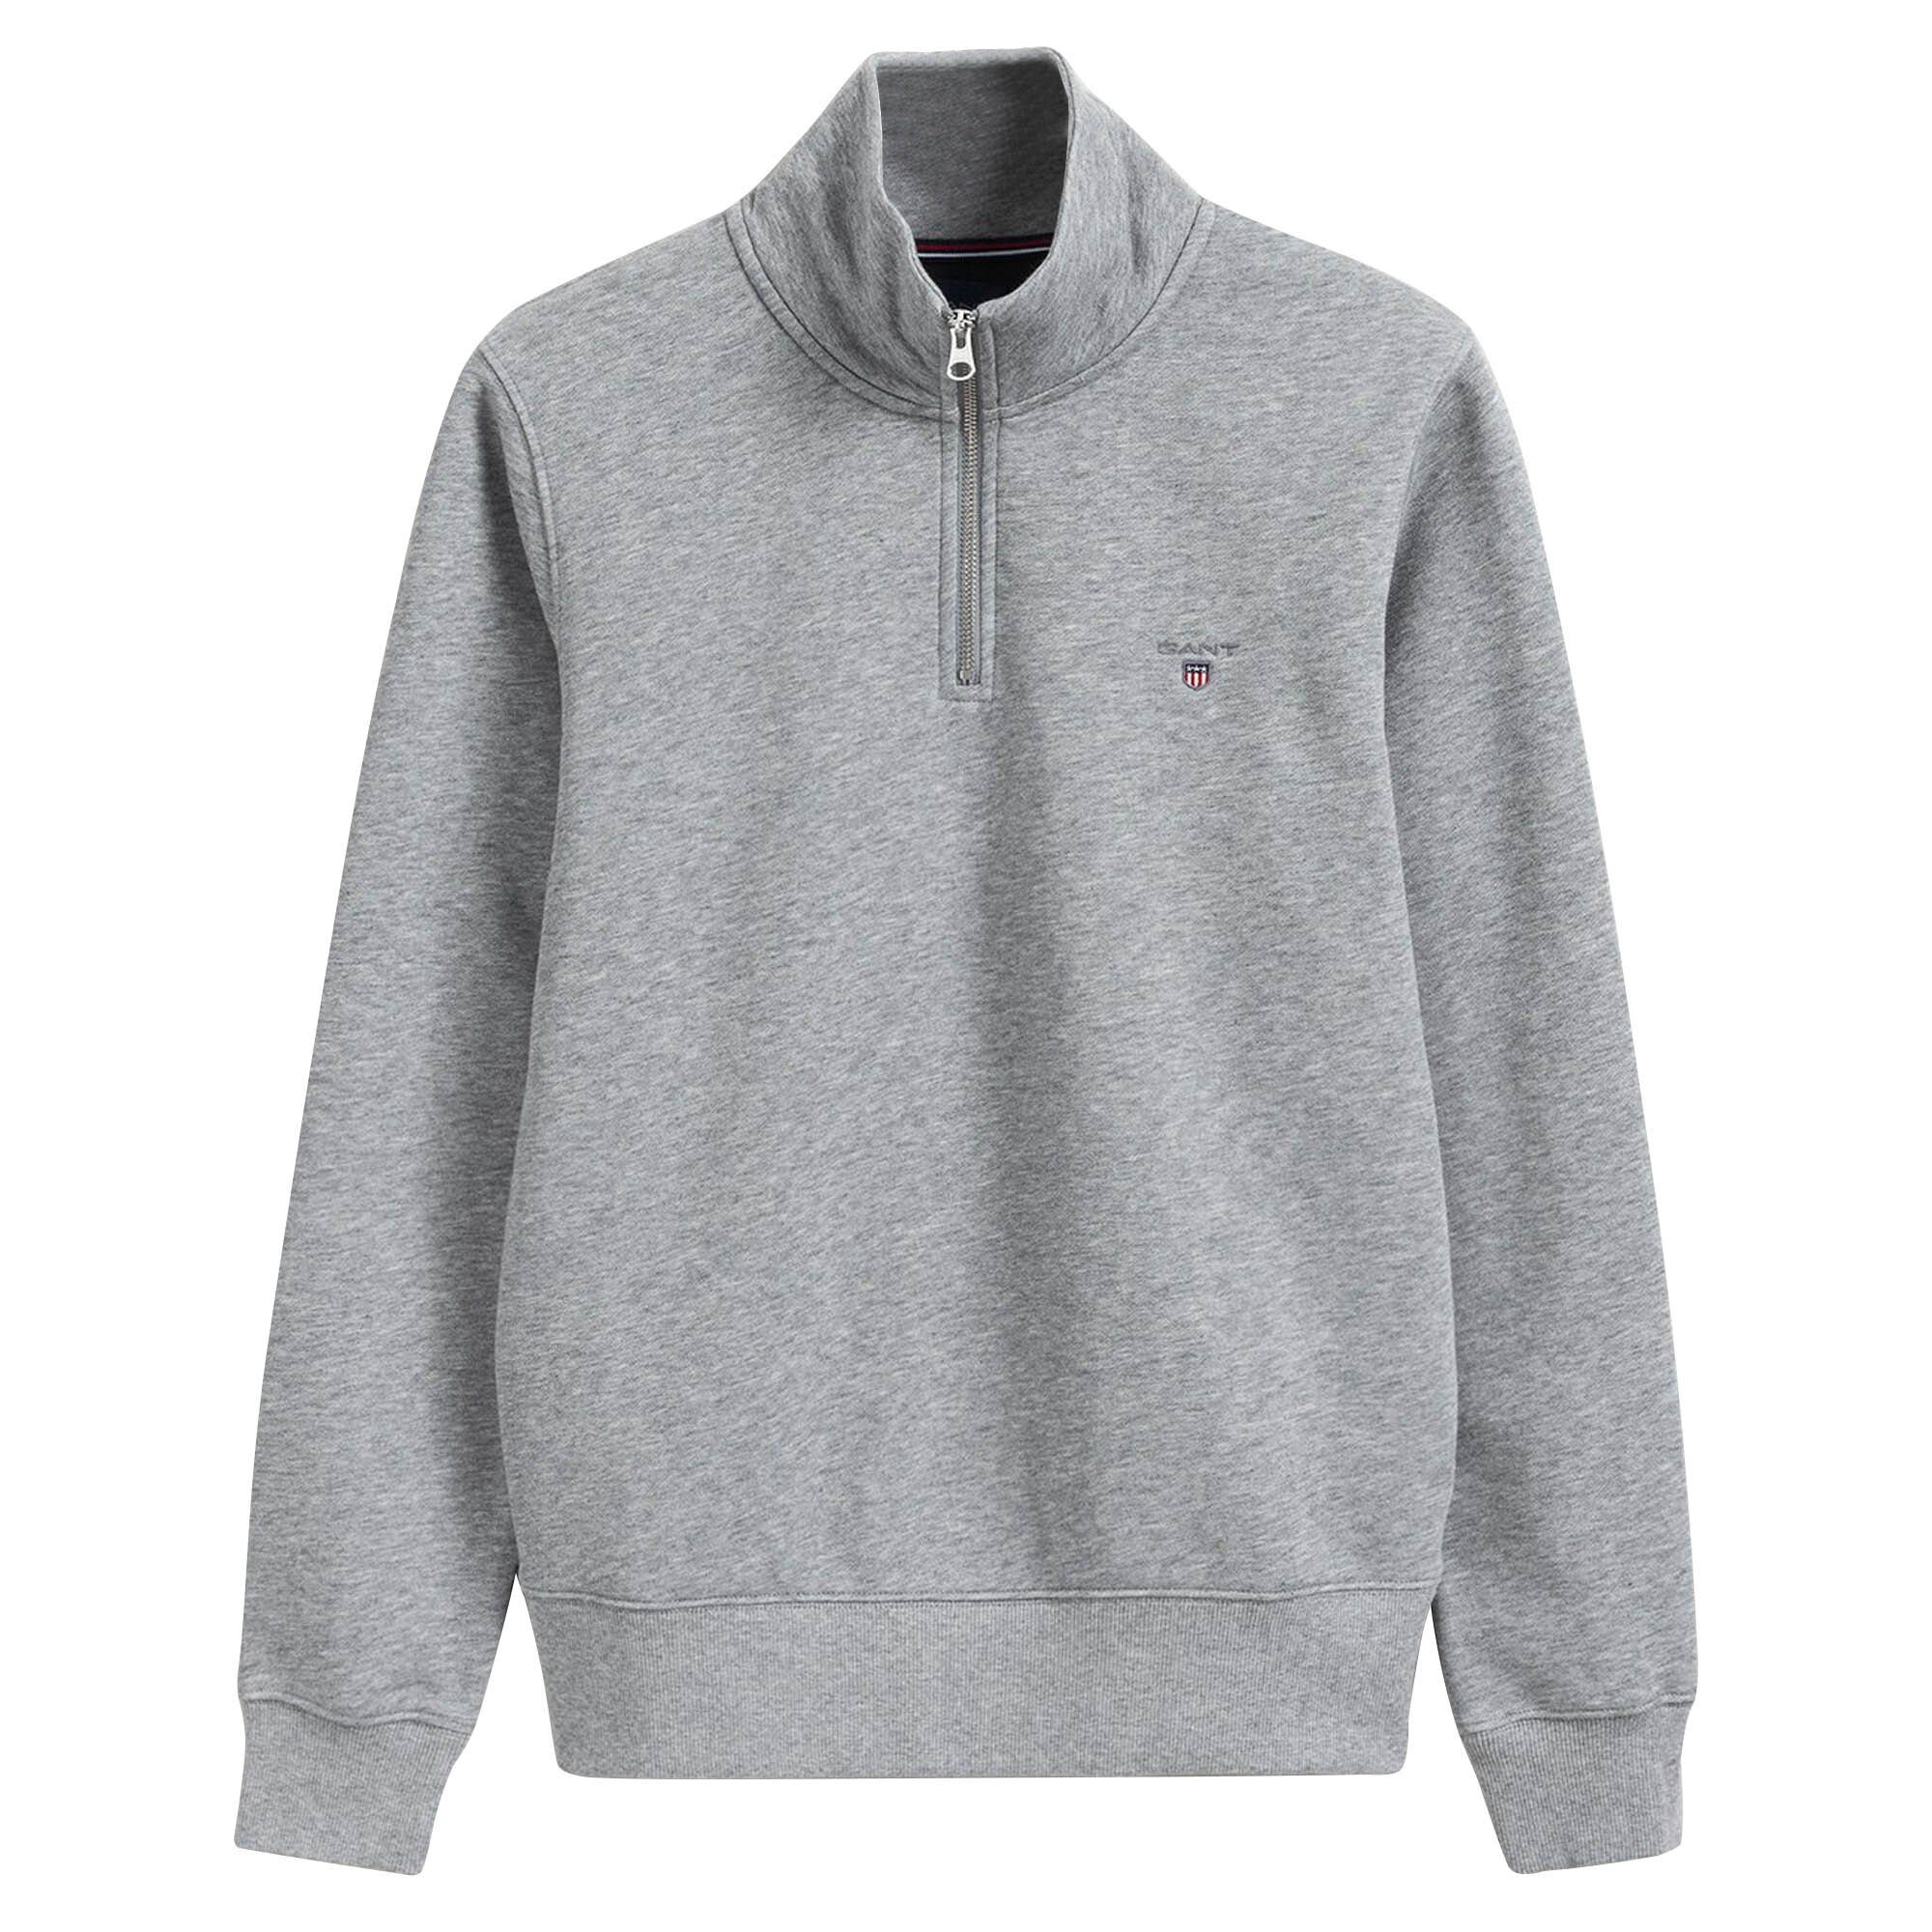 Sweatshirt Half Gant Grau Sweatshirt - Sweat Original Herren Zip